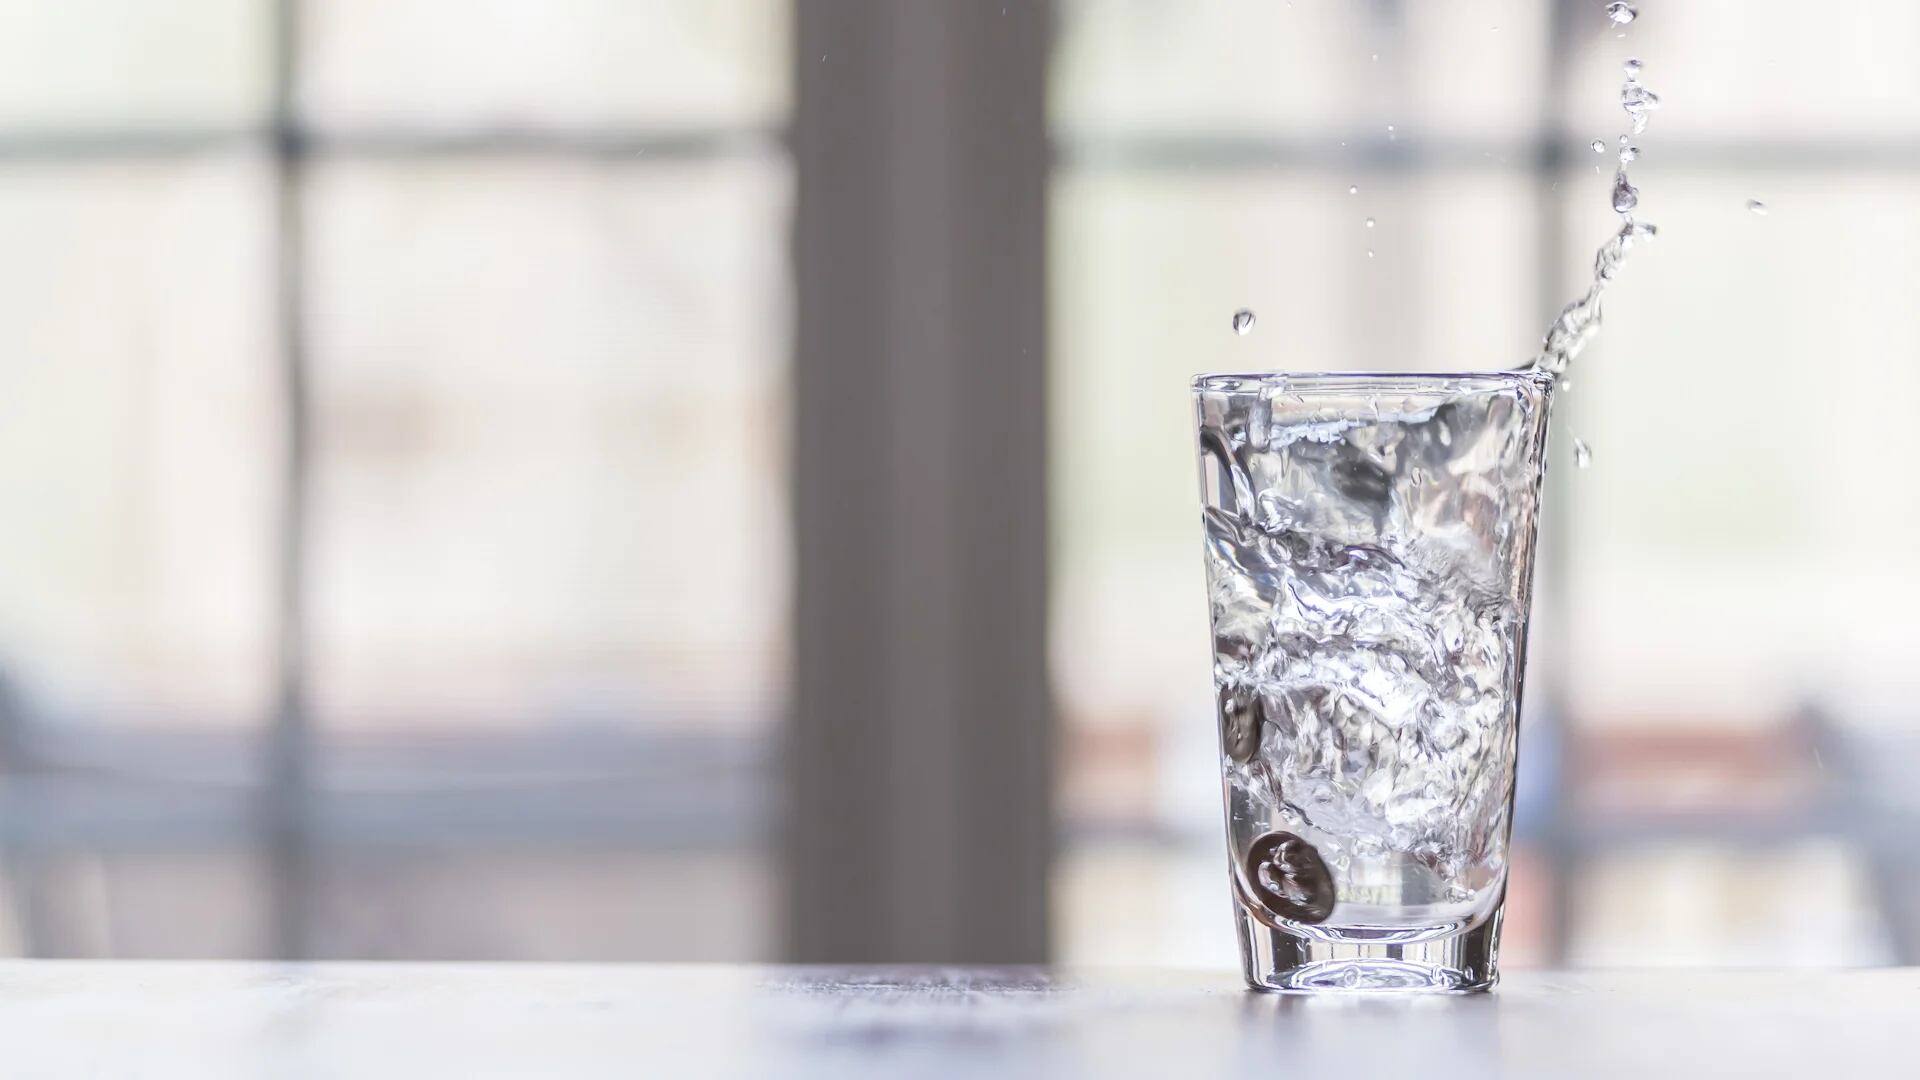 Beber agua adecuadamente puede ayudar a mantener un metabolismo más saludable (Getty)